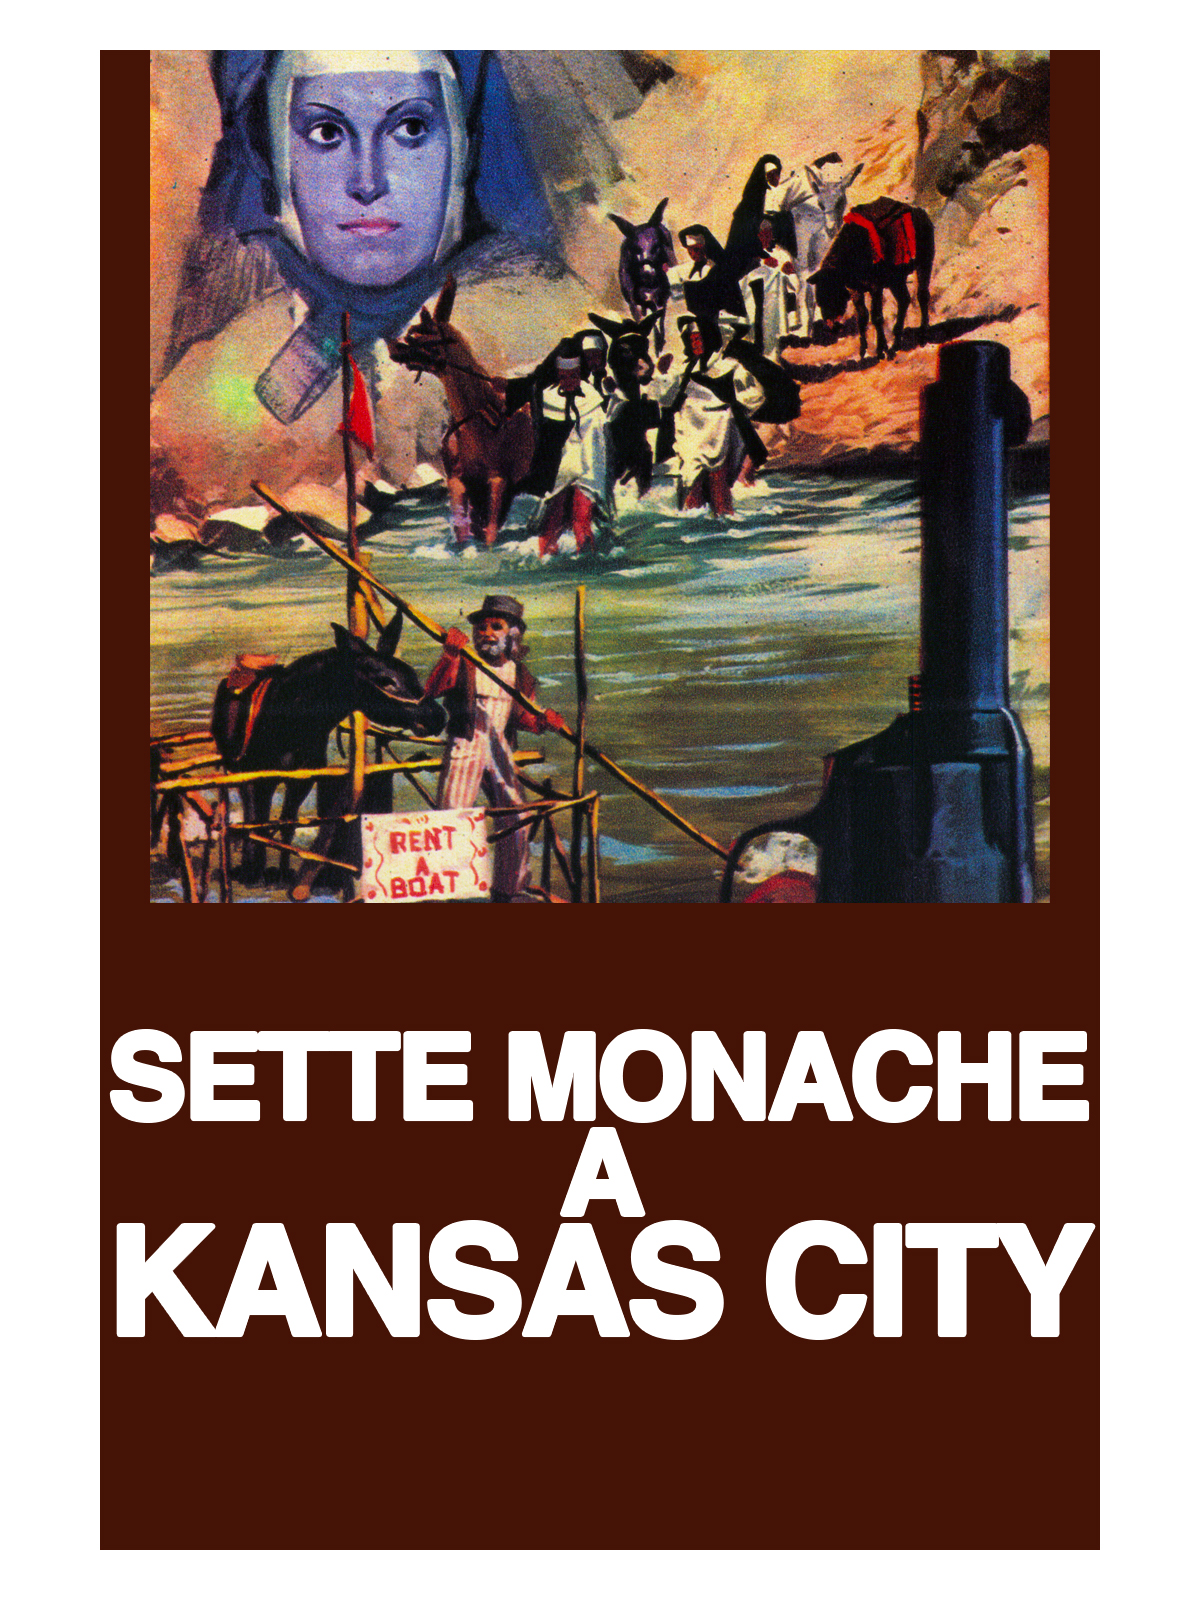 Sette monache a Kansas City